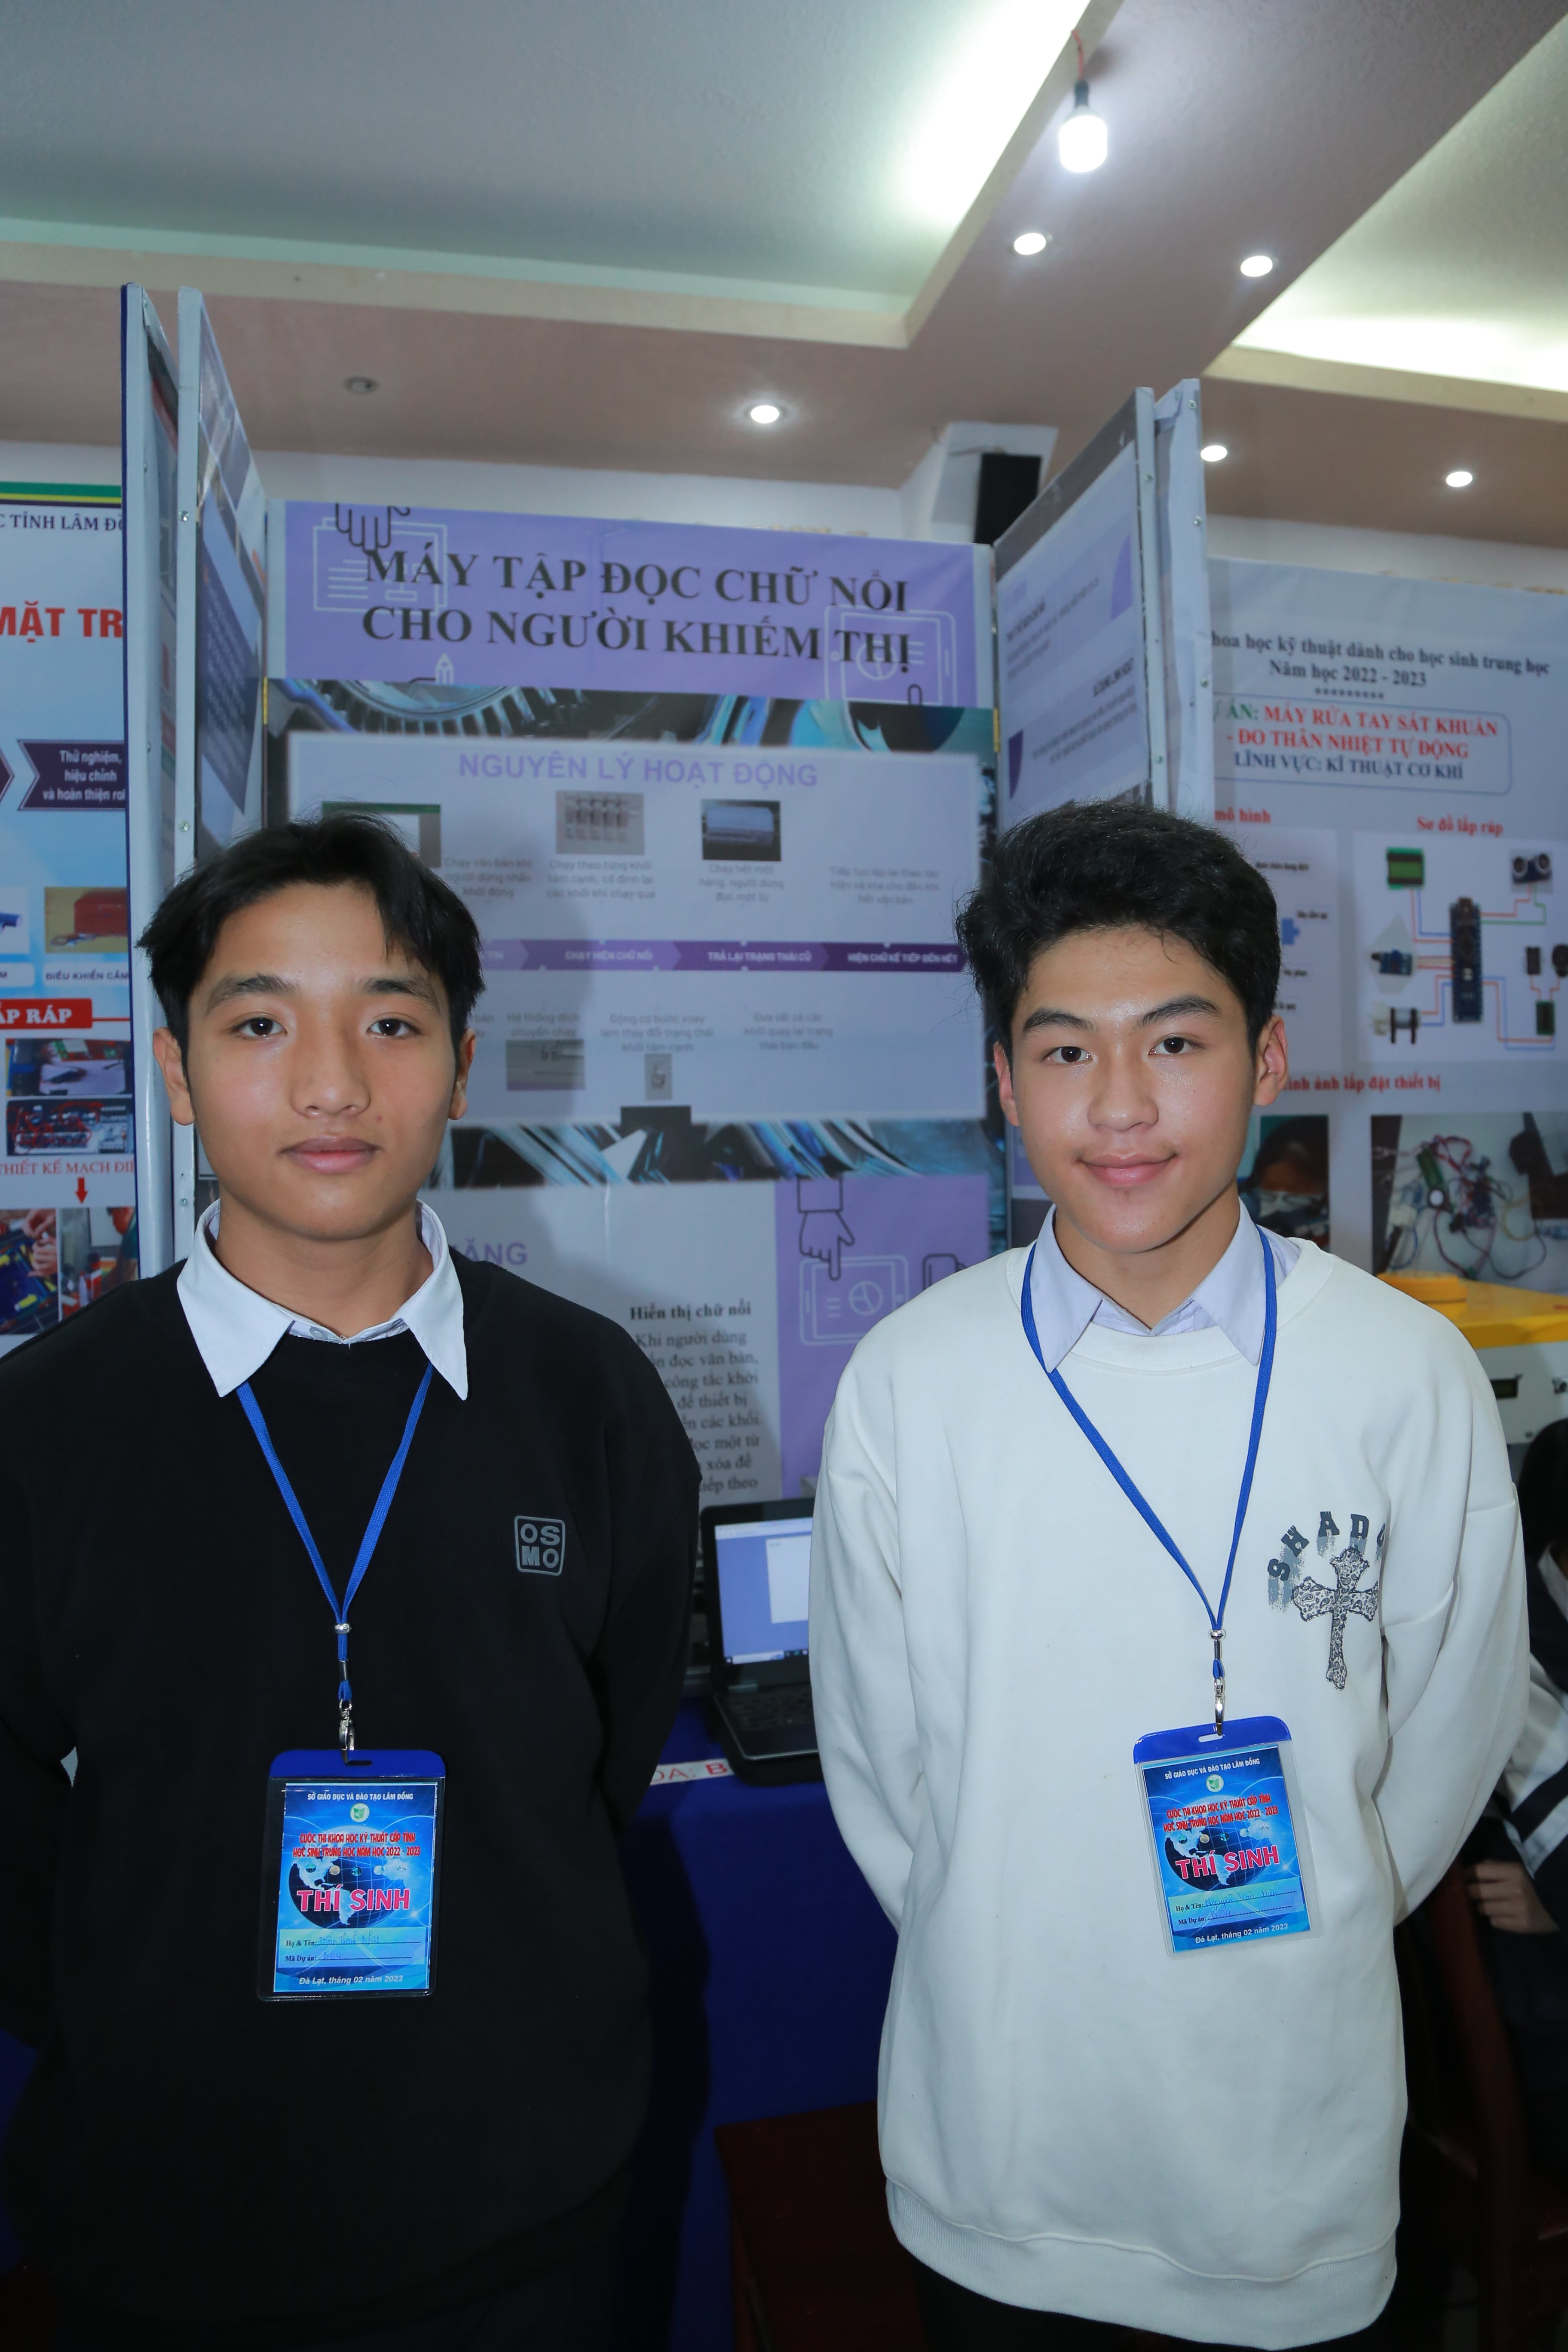 Học sinh Trường THCS-THPT Tà Nung với dự án “Máy tập đọc chữ nổi cho người khiếm thị”